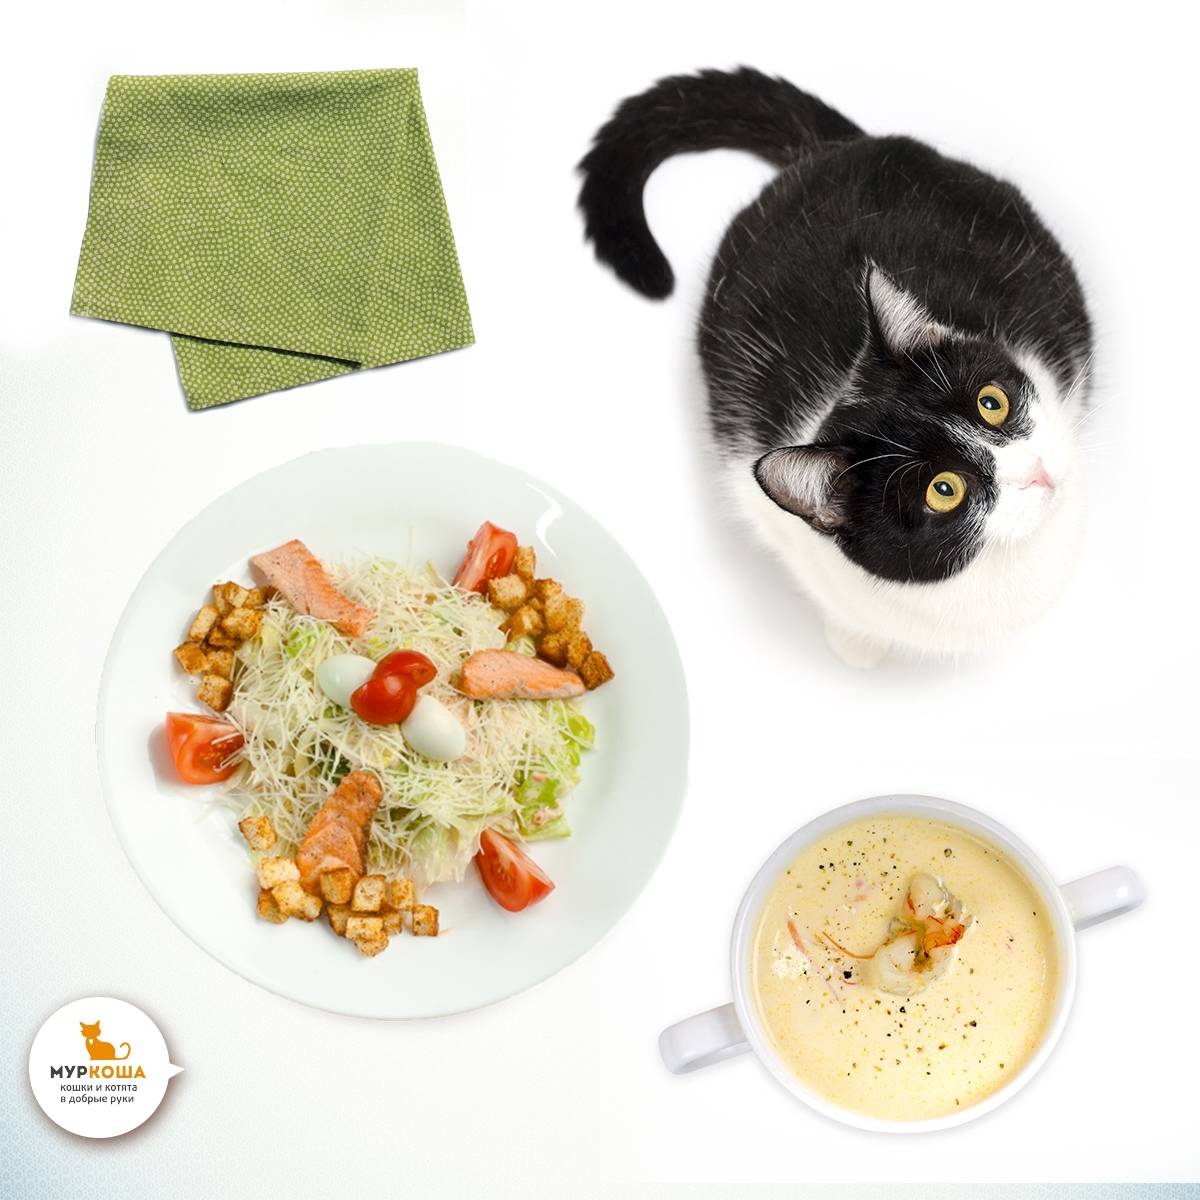 Чем лучше кормить кошку: разновидности кормов, плюсы и минусы, советы ветеринаров для выбора питания кошкам